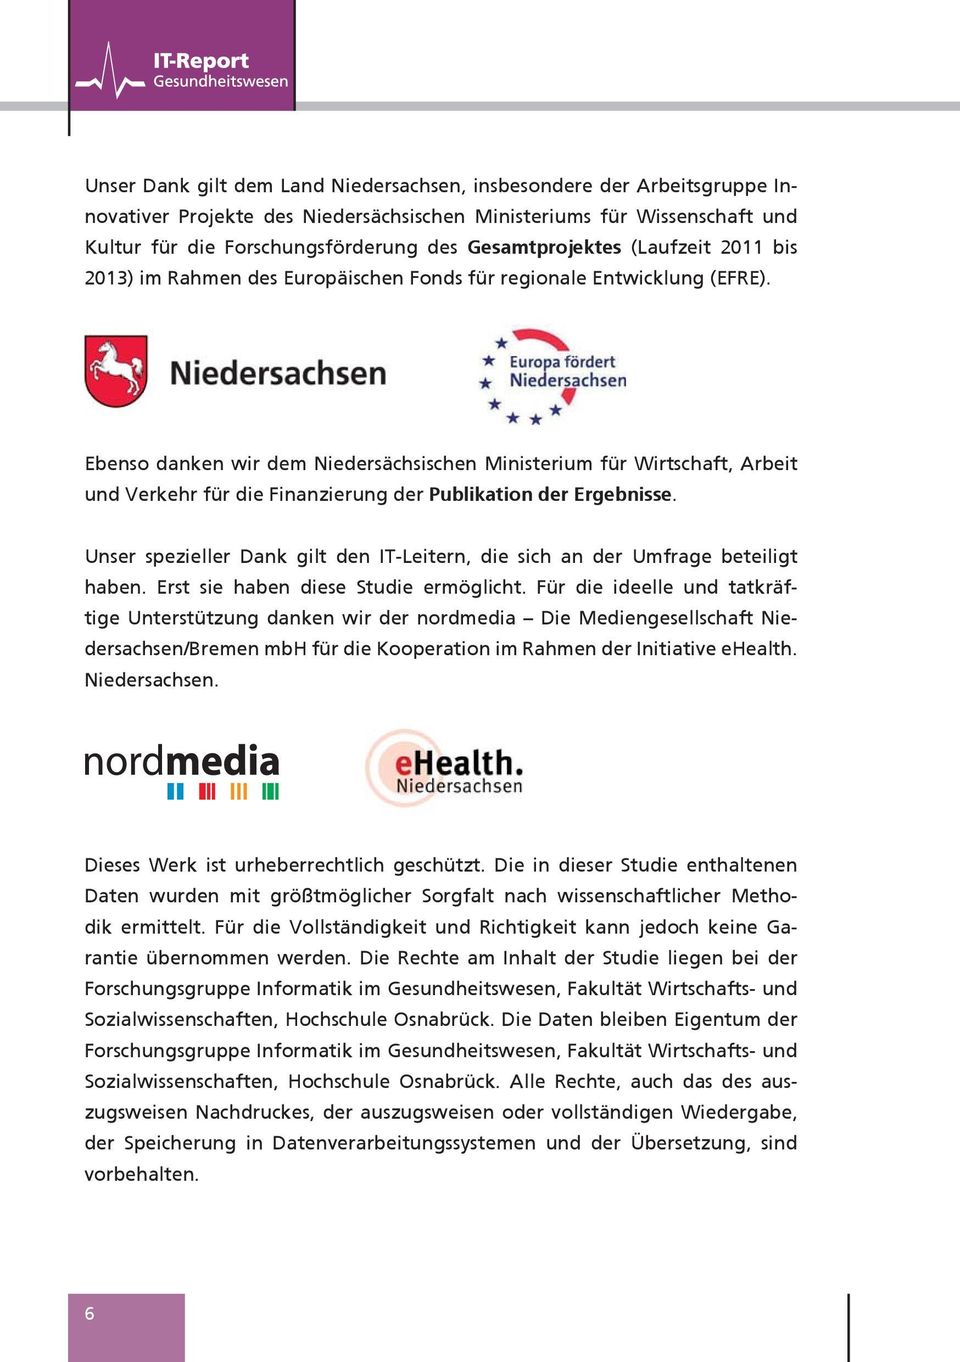 Ebenso danken wir dem Niedersächsischen Ministerium für Wirtschaft, Arbeit und Verkehr für die Finanzierung der Publikation der Ergebnisse.